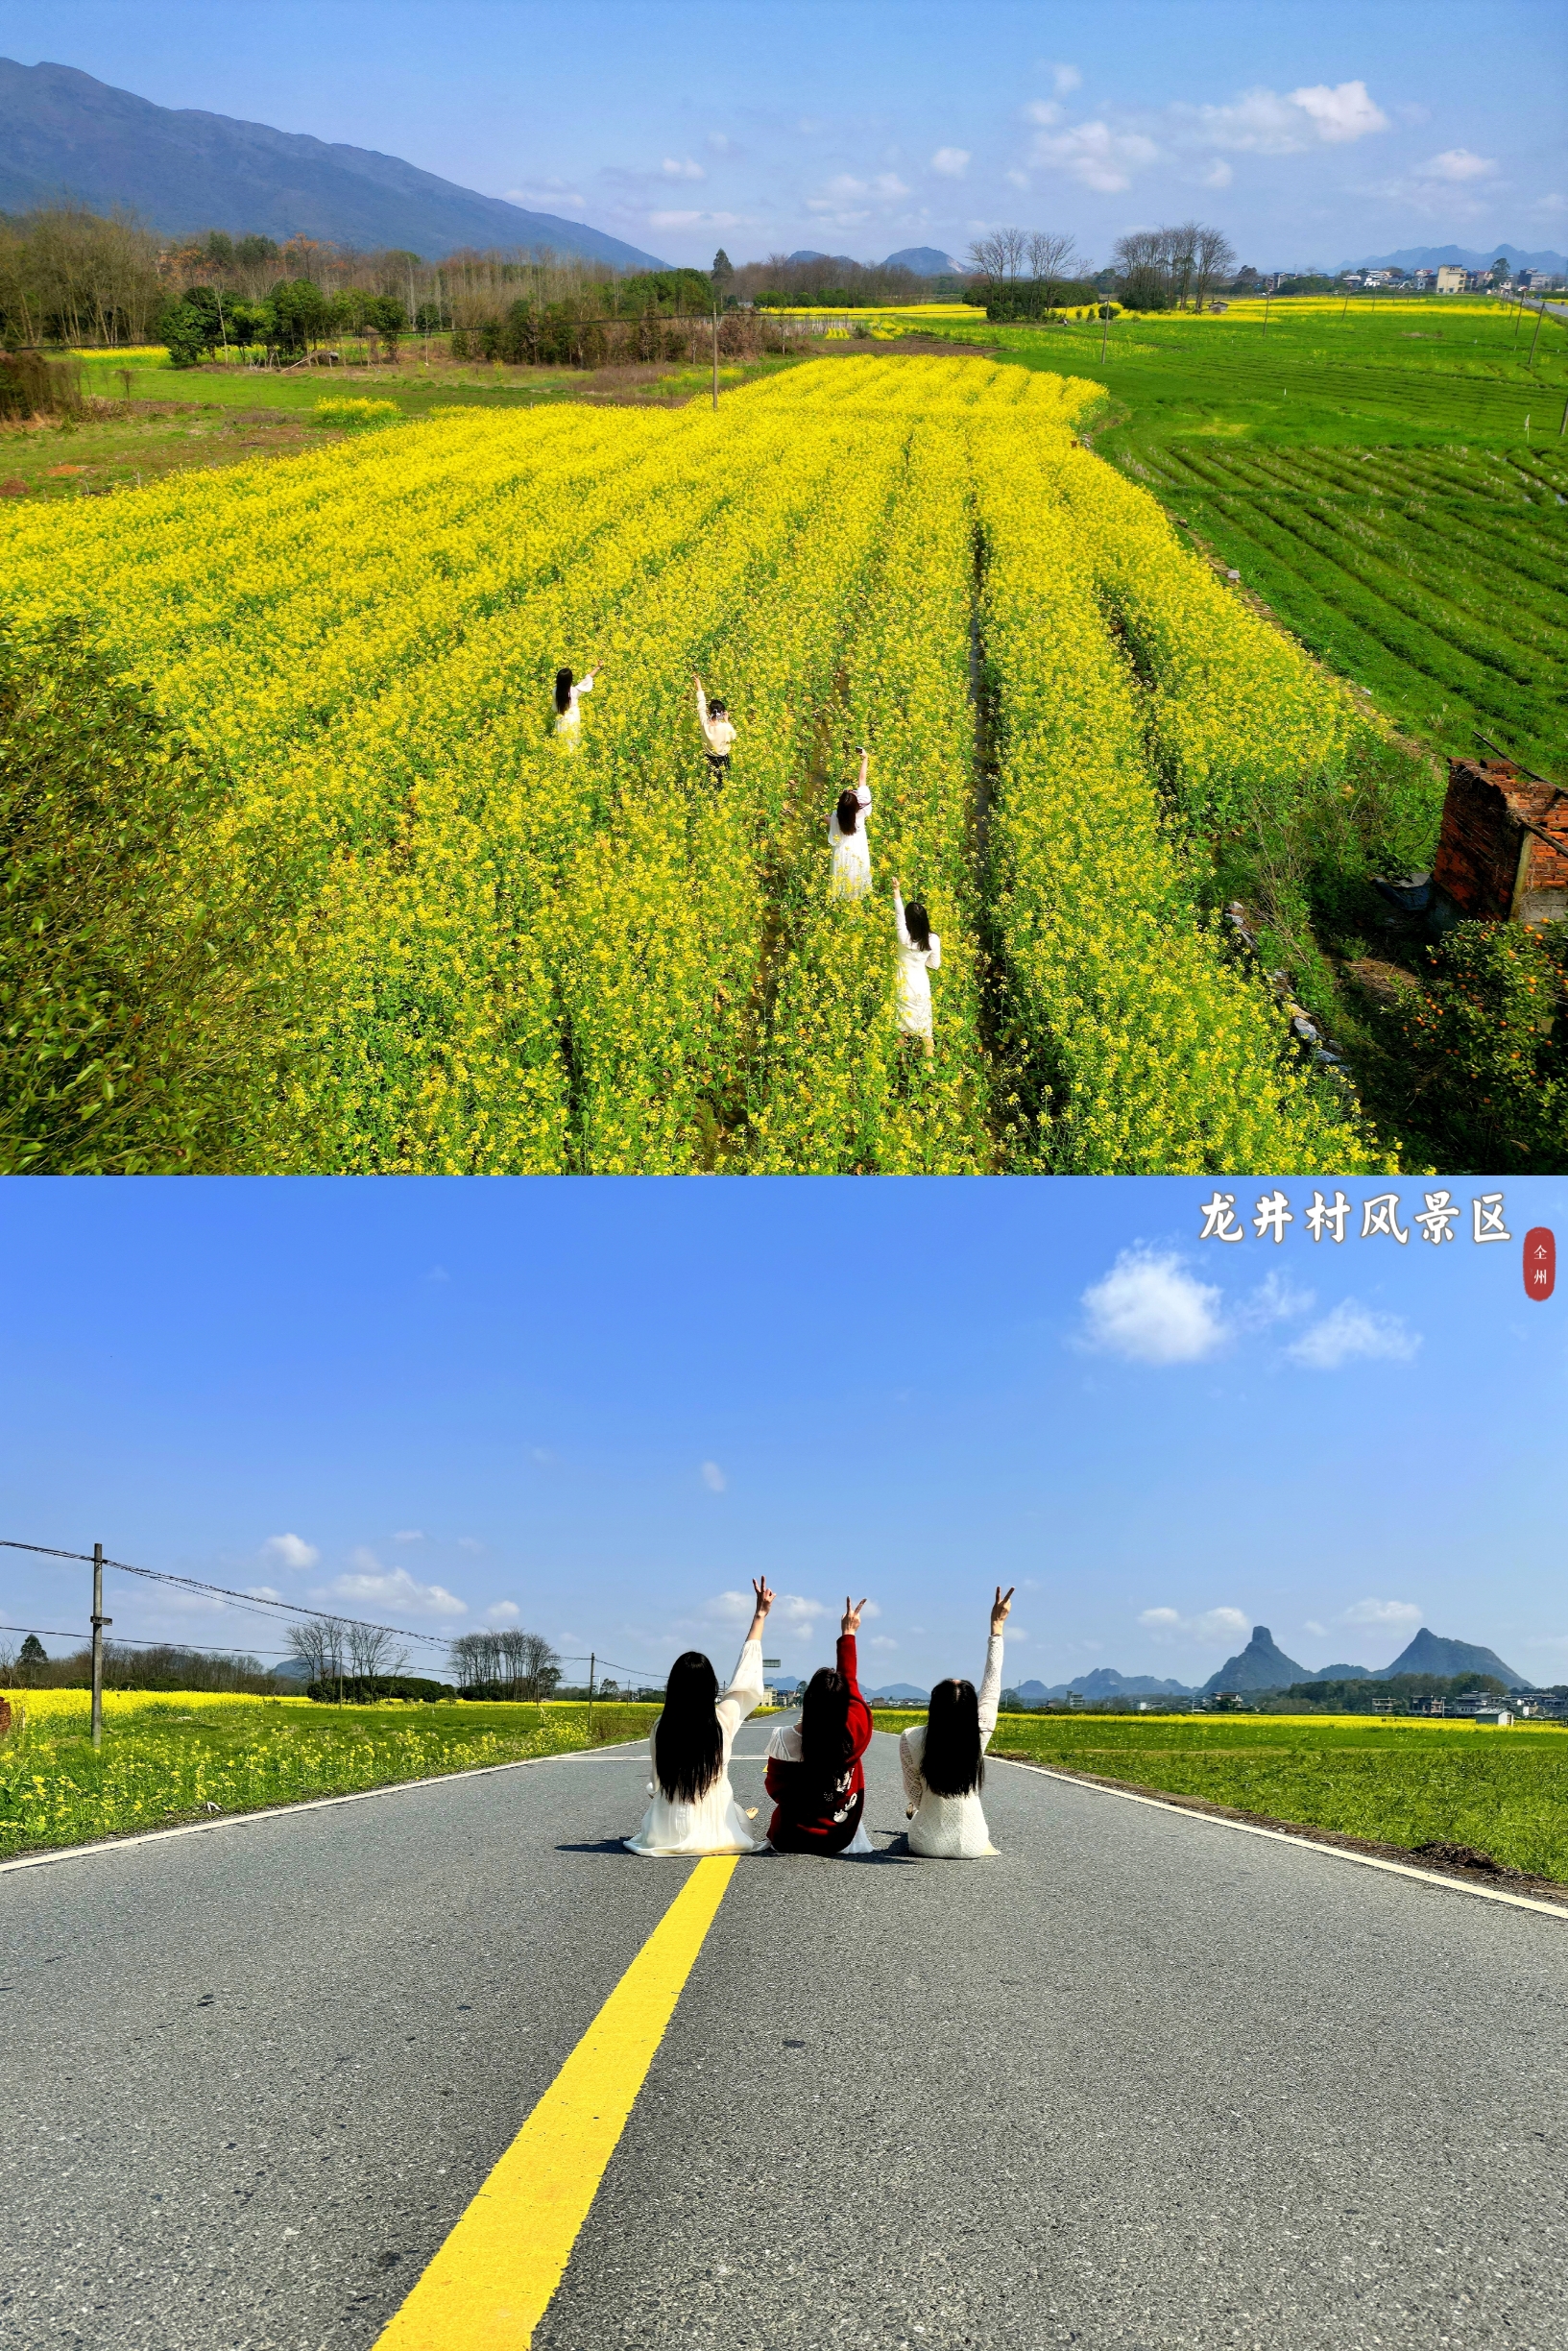 桂林·龙井村风景区丨春天来全州龙井赏油菜花海